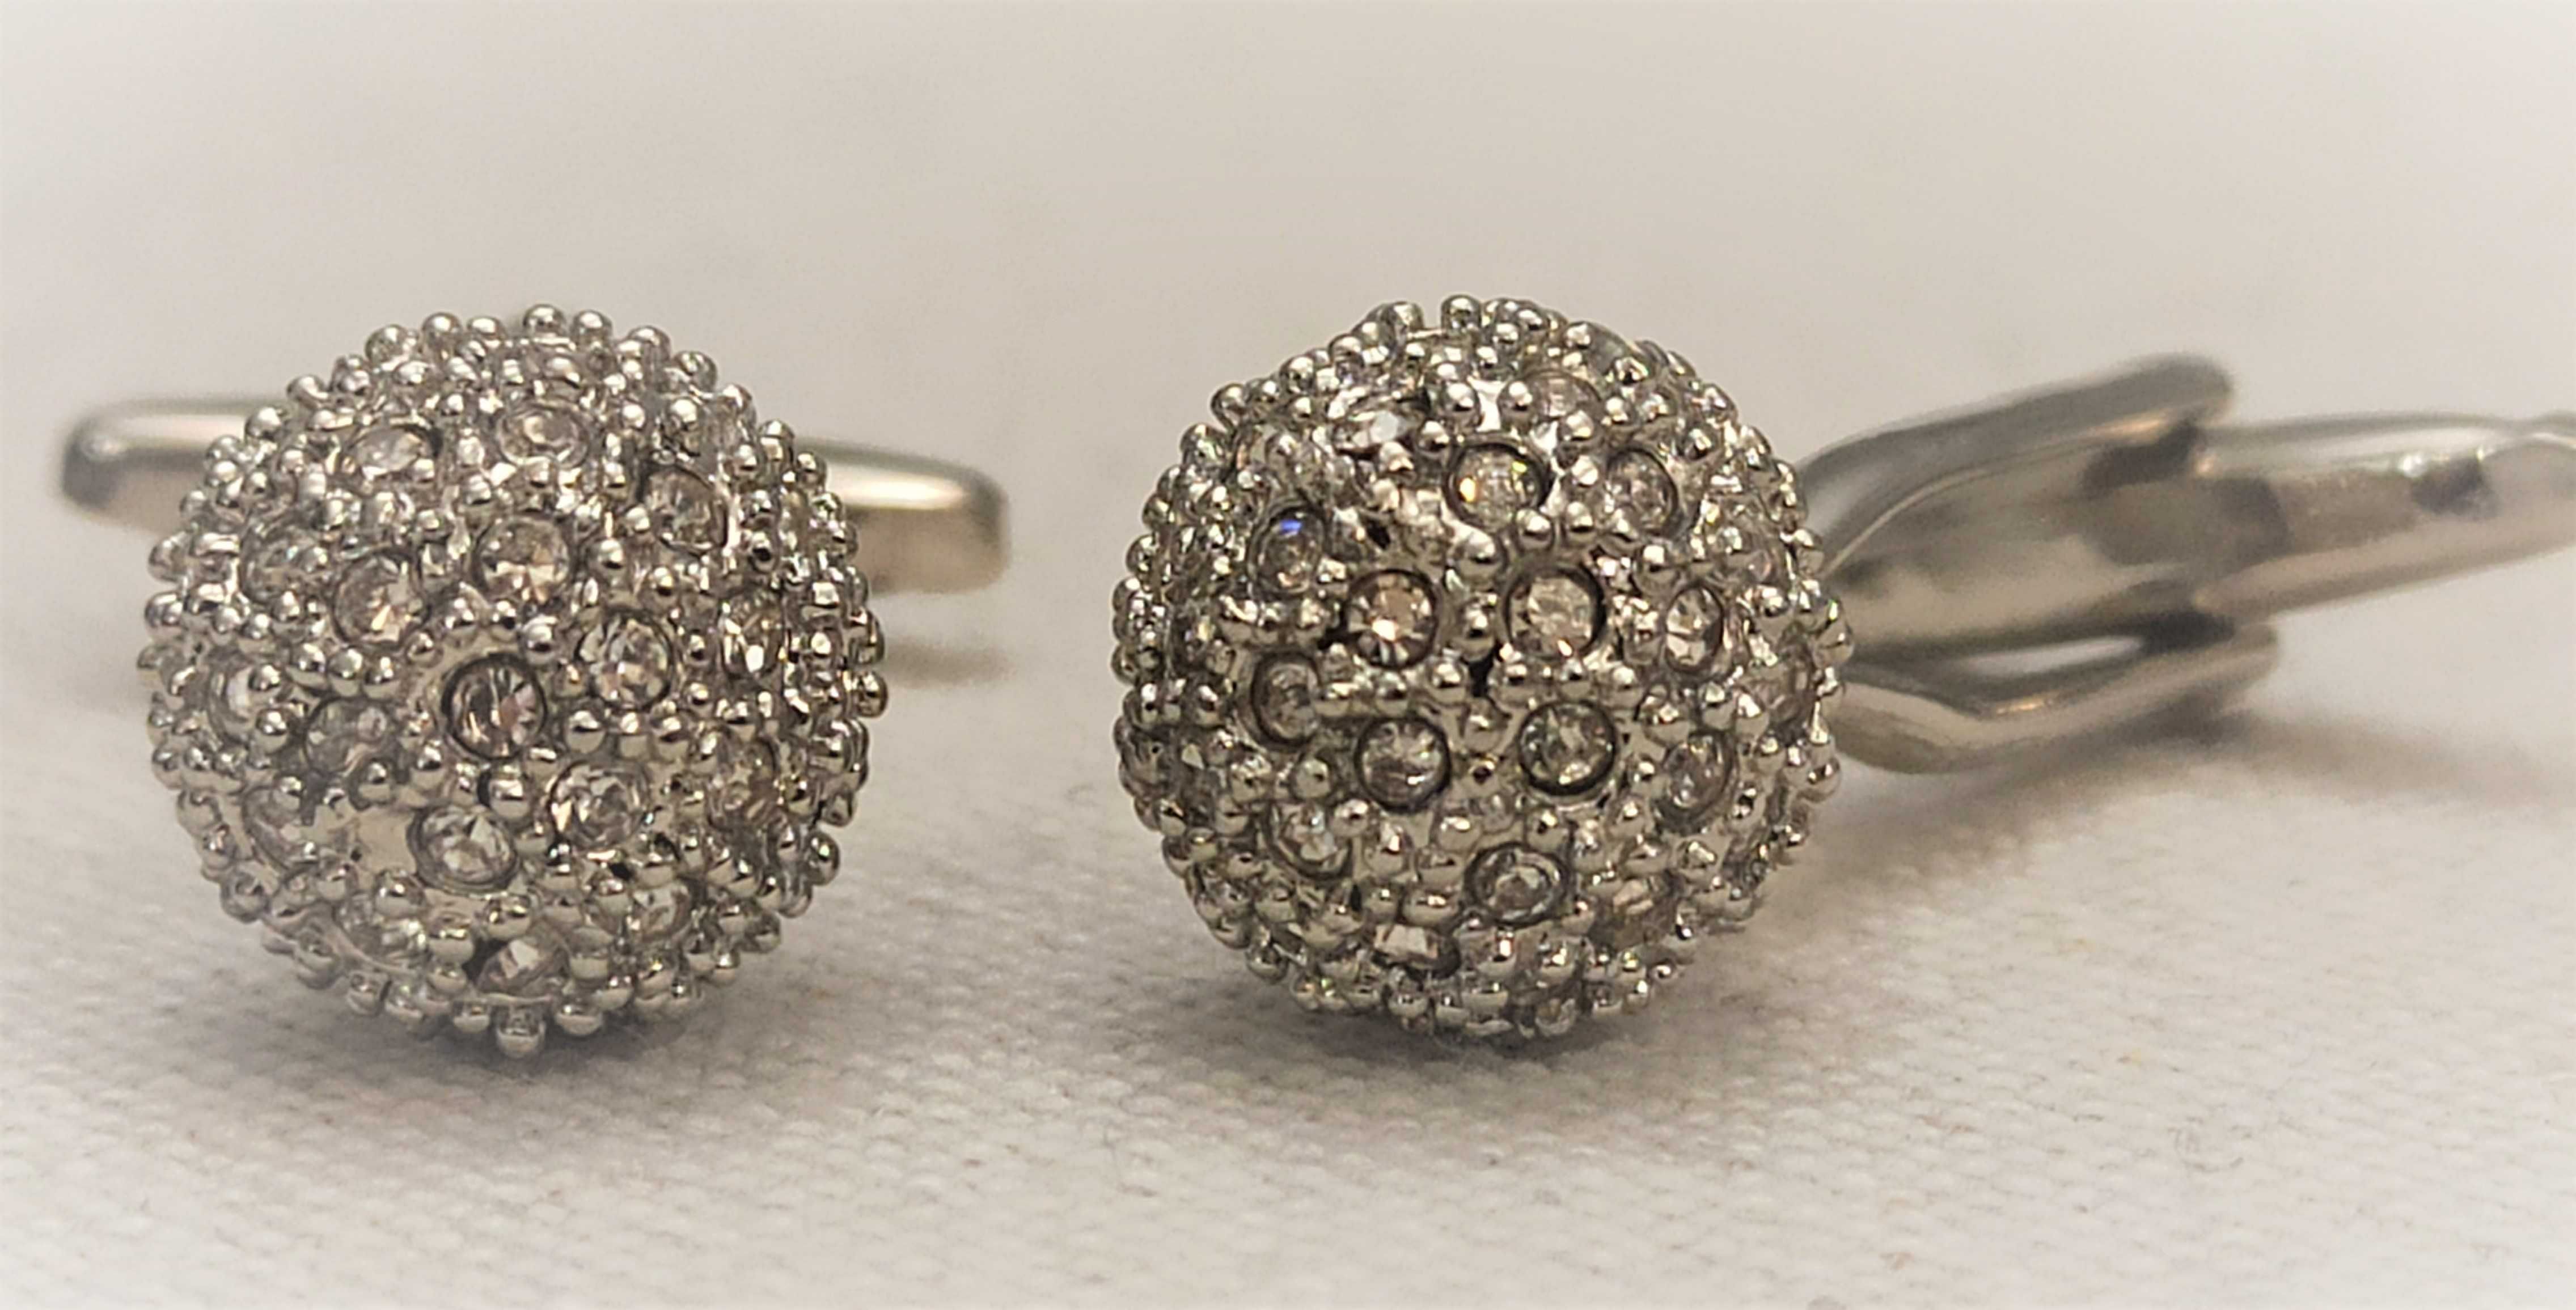 Gustowne spinki w kolorze srebrnym ozdobiona licznymi kryształkami